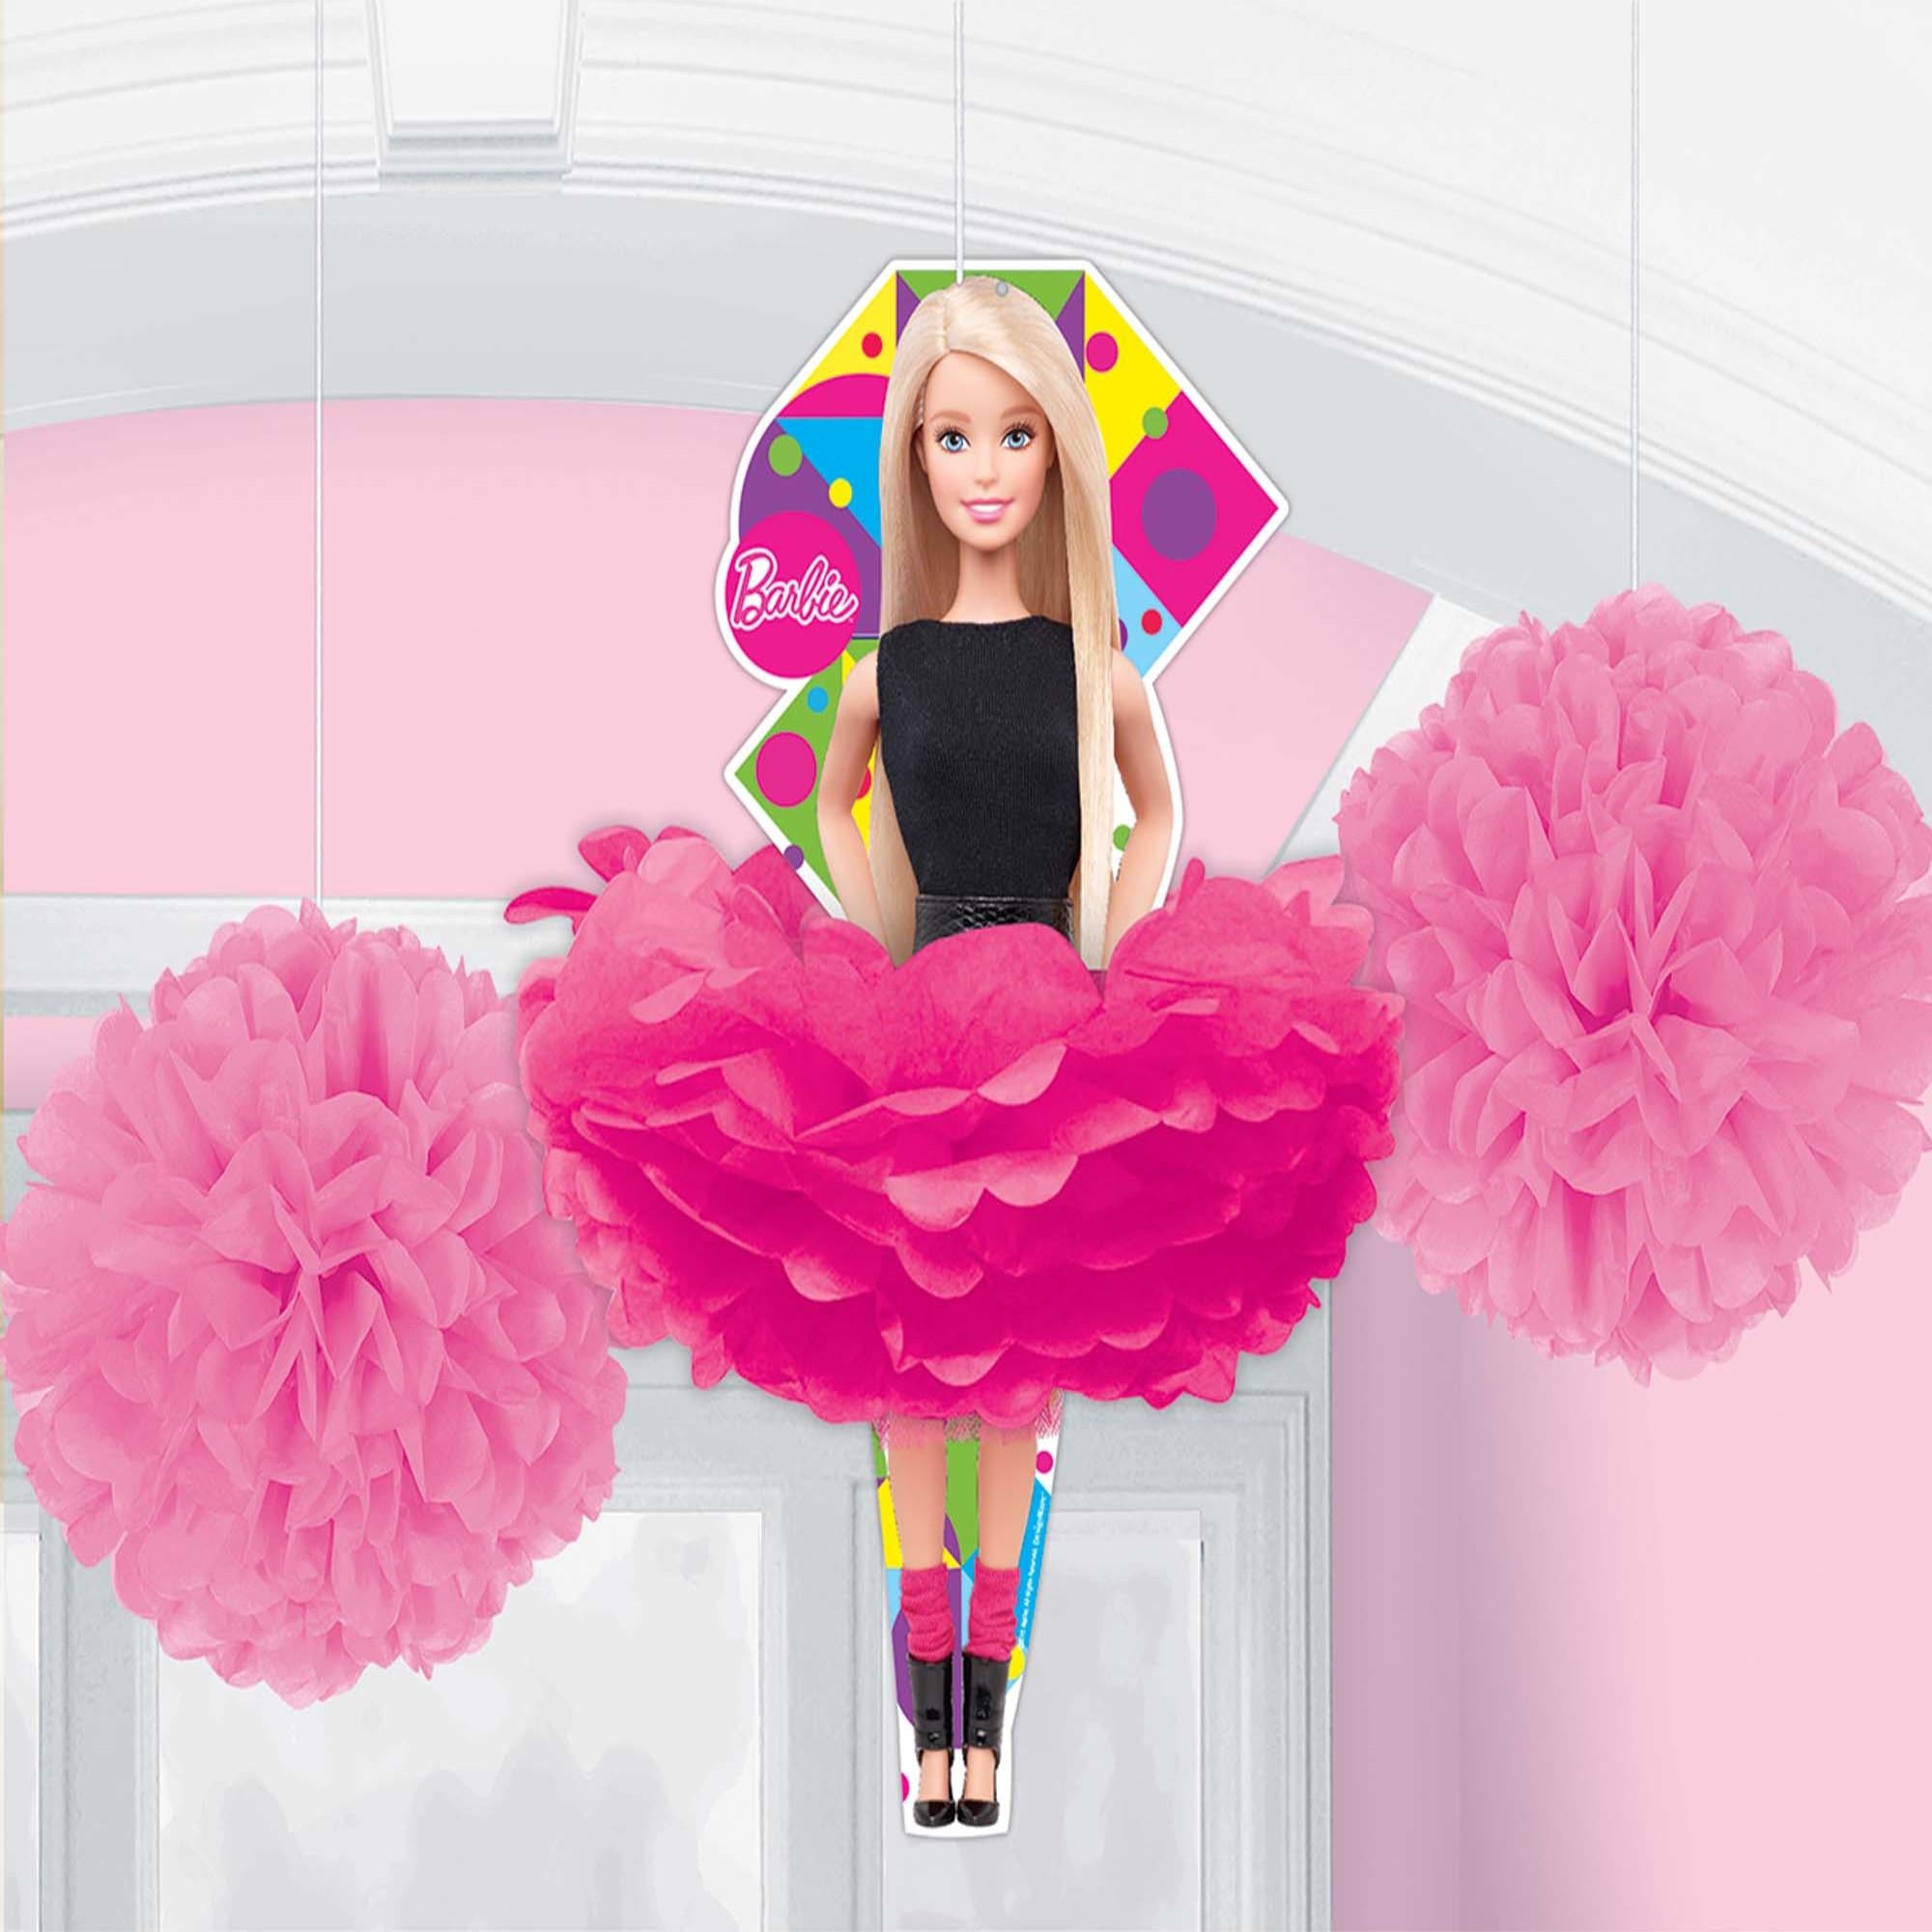 Barbie Sparkle Fluffy Decorations 3pcs Decorations - Party Centre